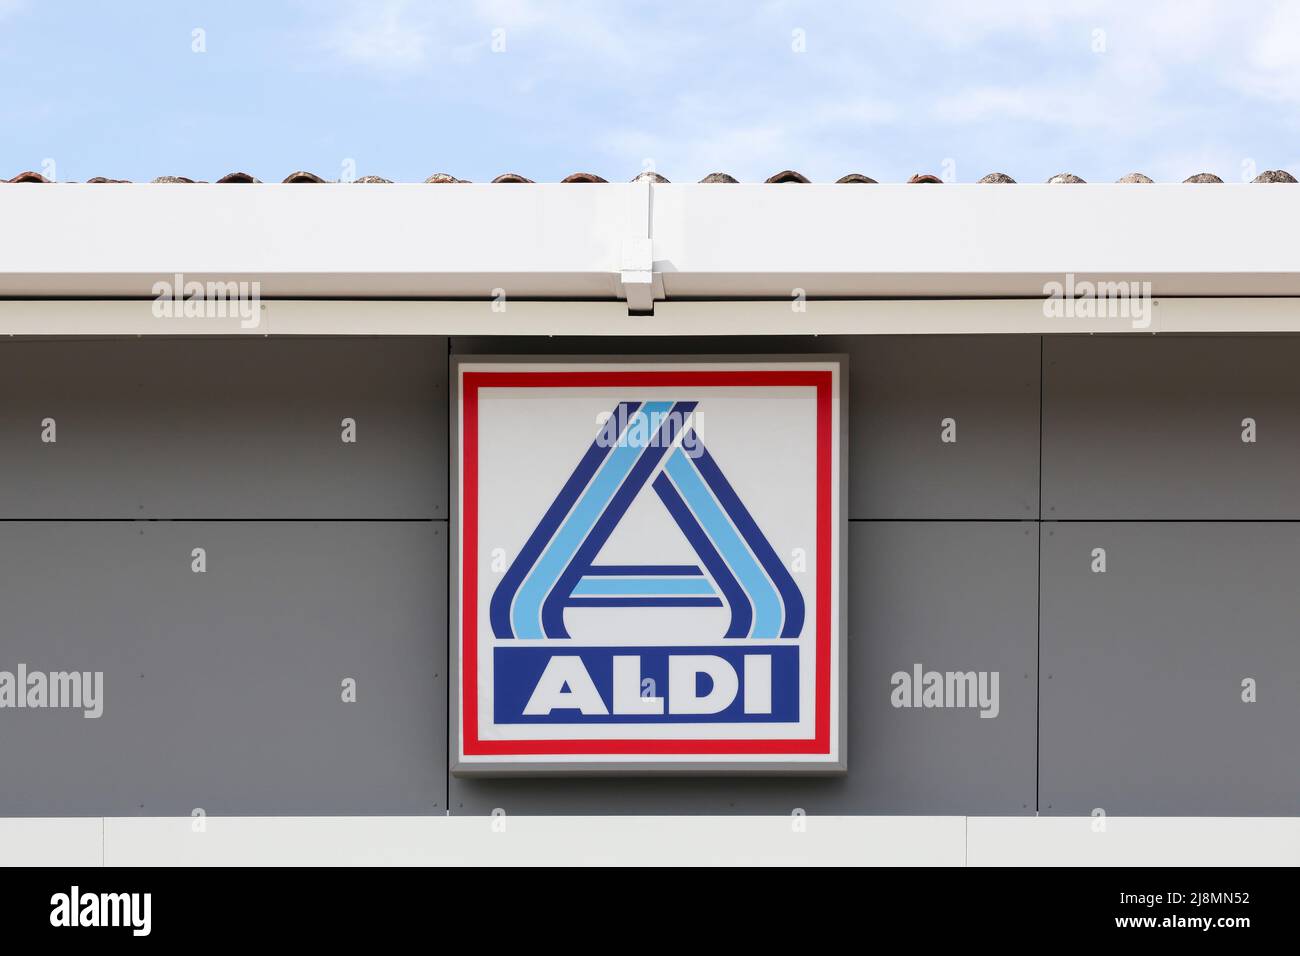 Anse, France - 23 mai 2021 : logo Aldi sur un mur. Aldi est une chaîne de supermarchés à prix réduit de premier plan avec plus de 10 000 magasins dans 18 pays Banque D'Images